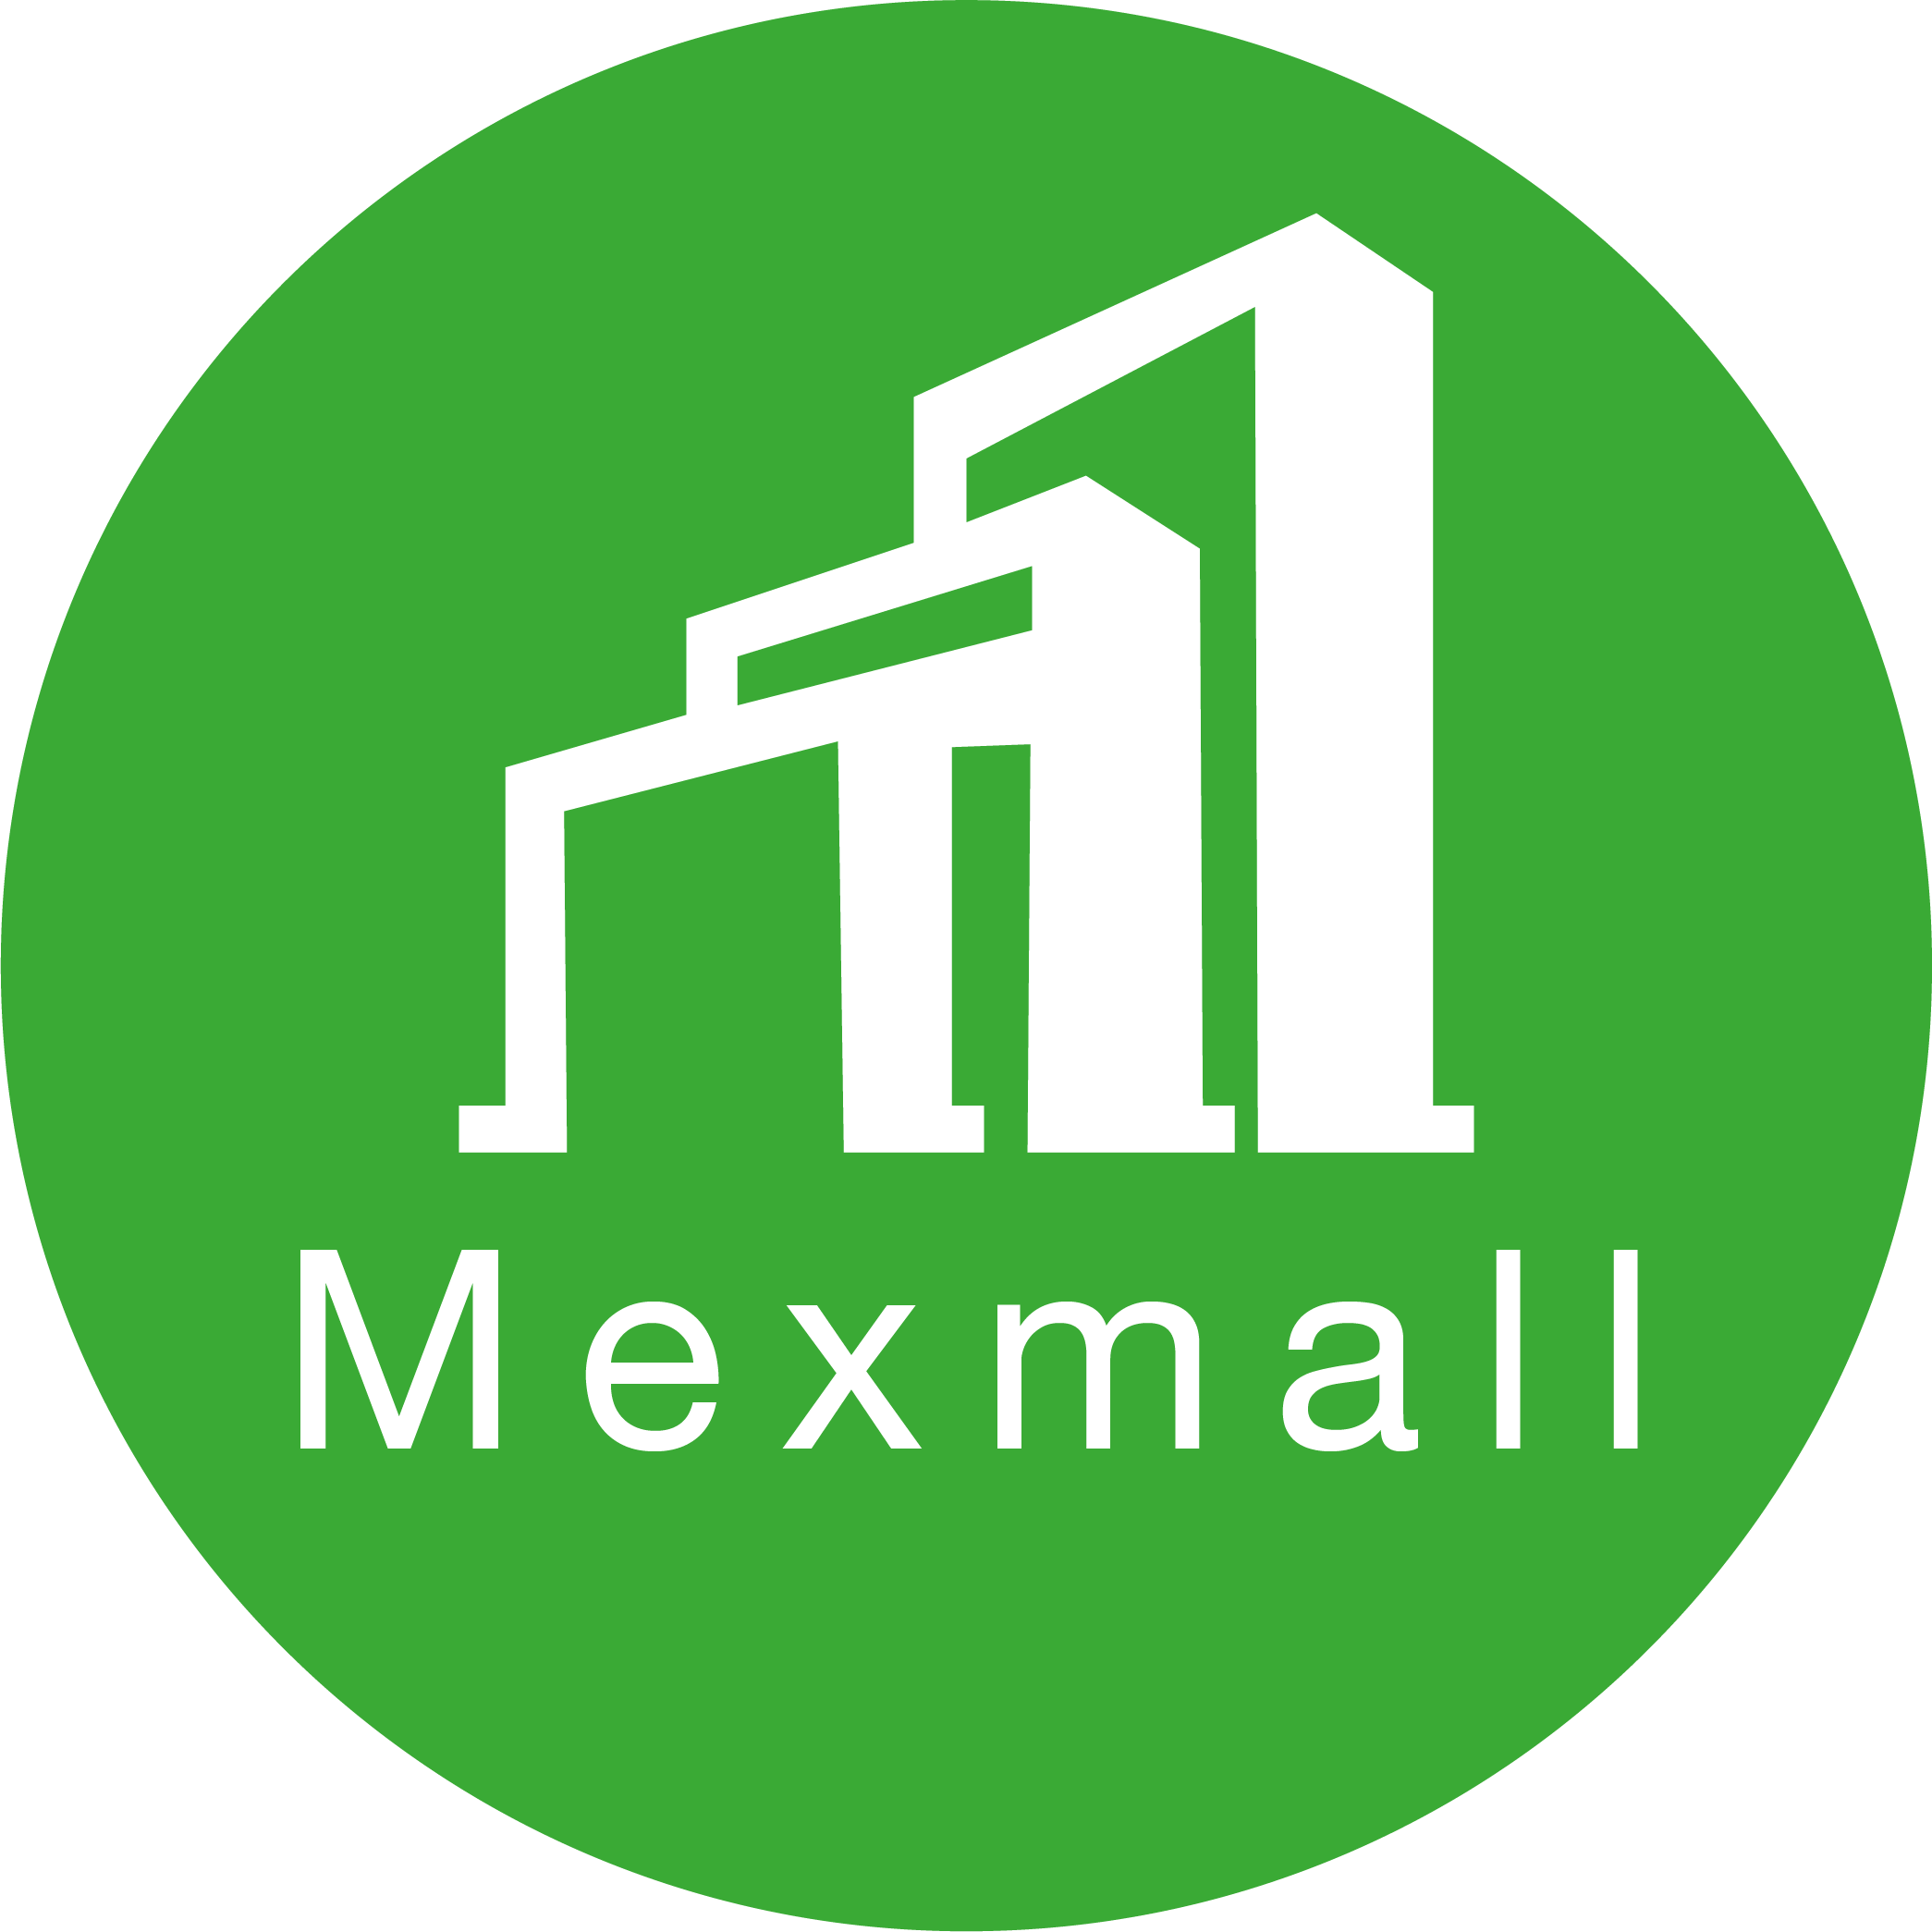 Mexmall